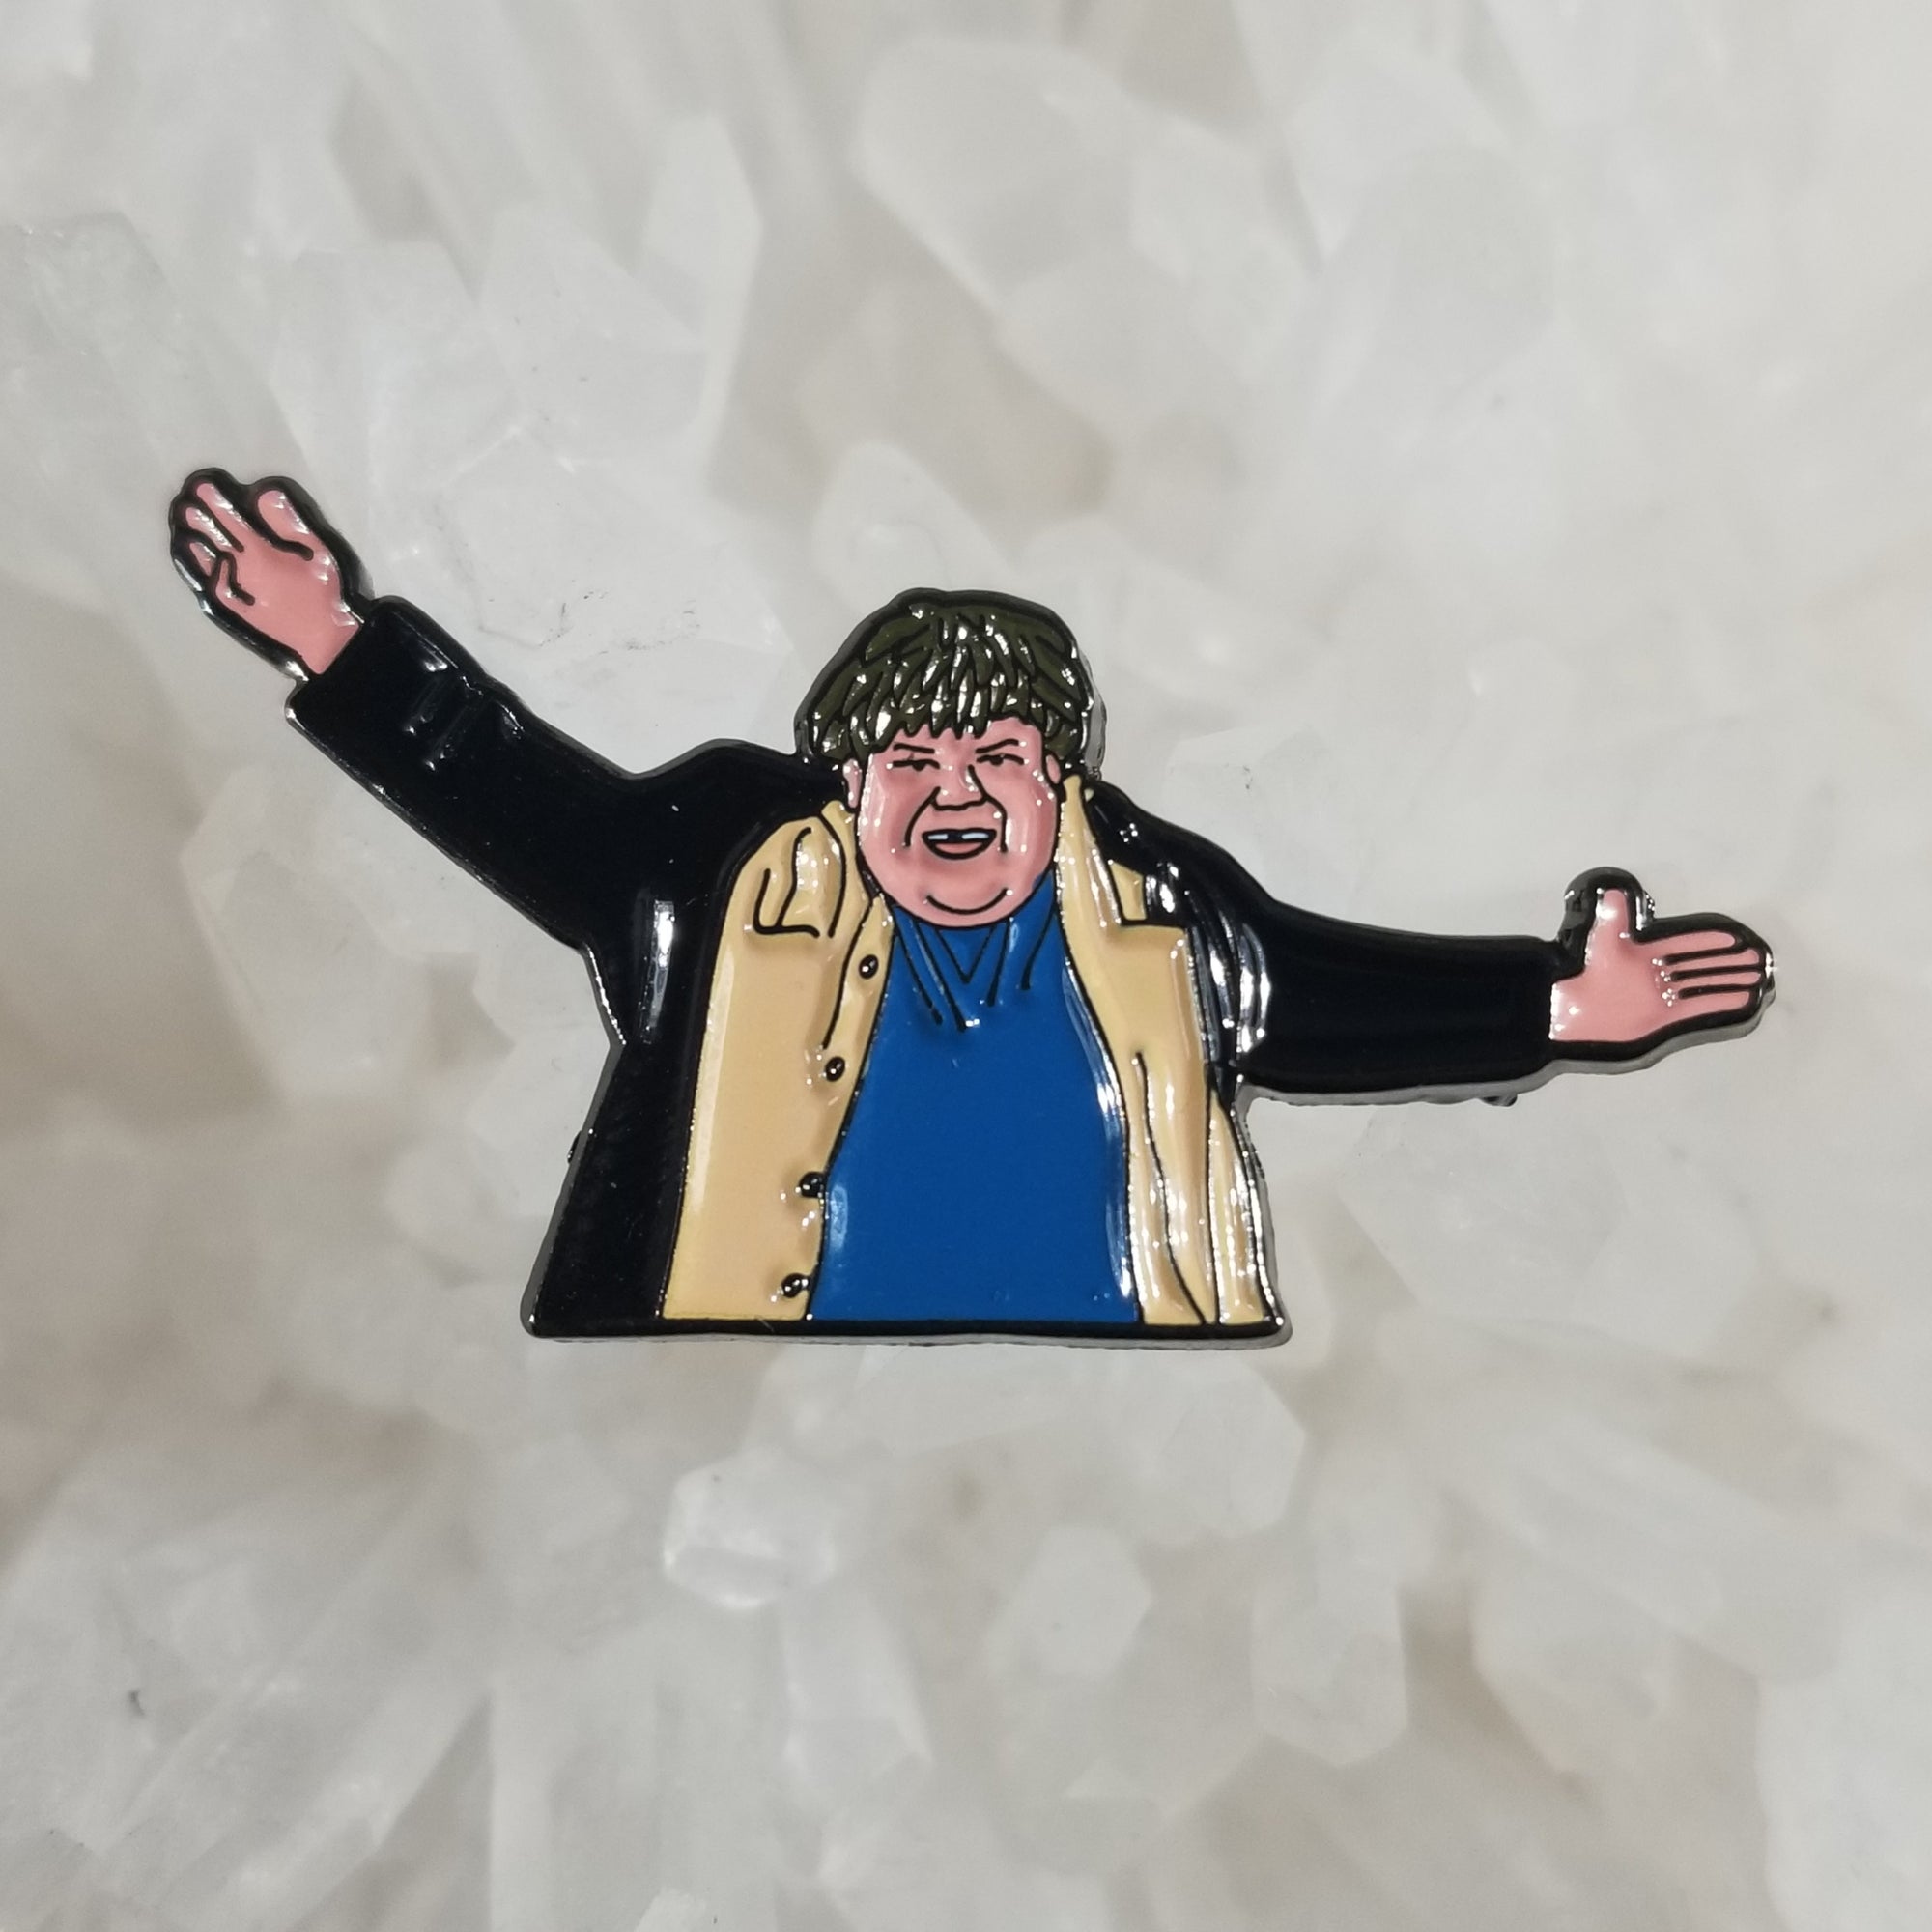 Tommy Boy Chris Farley Fat Guy In A Little Coat Comedy Funny Movie Enamel Hat Pin